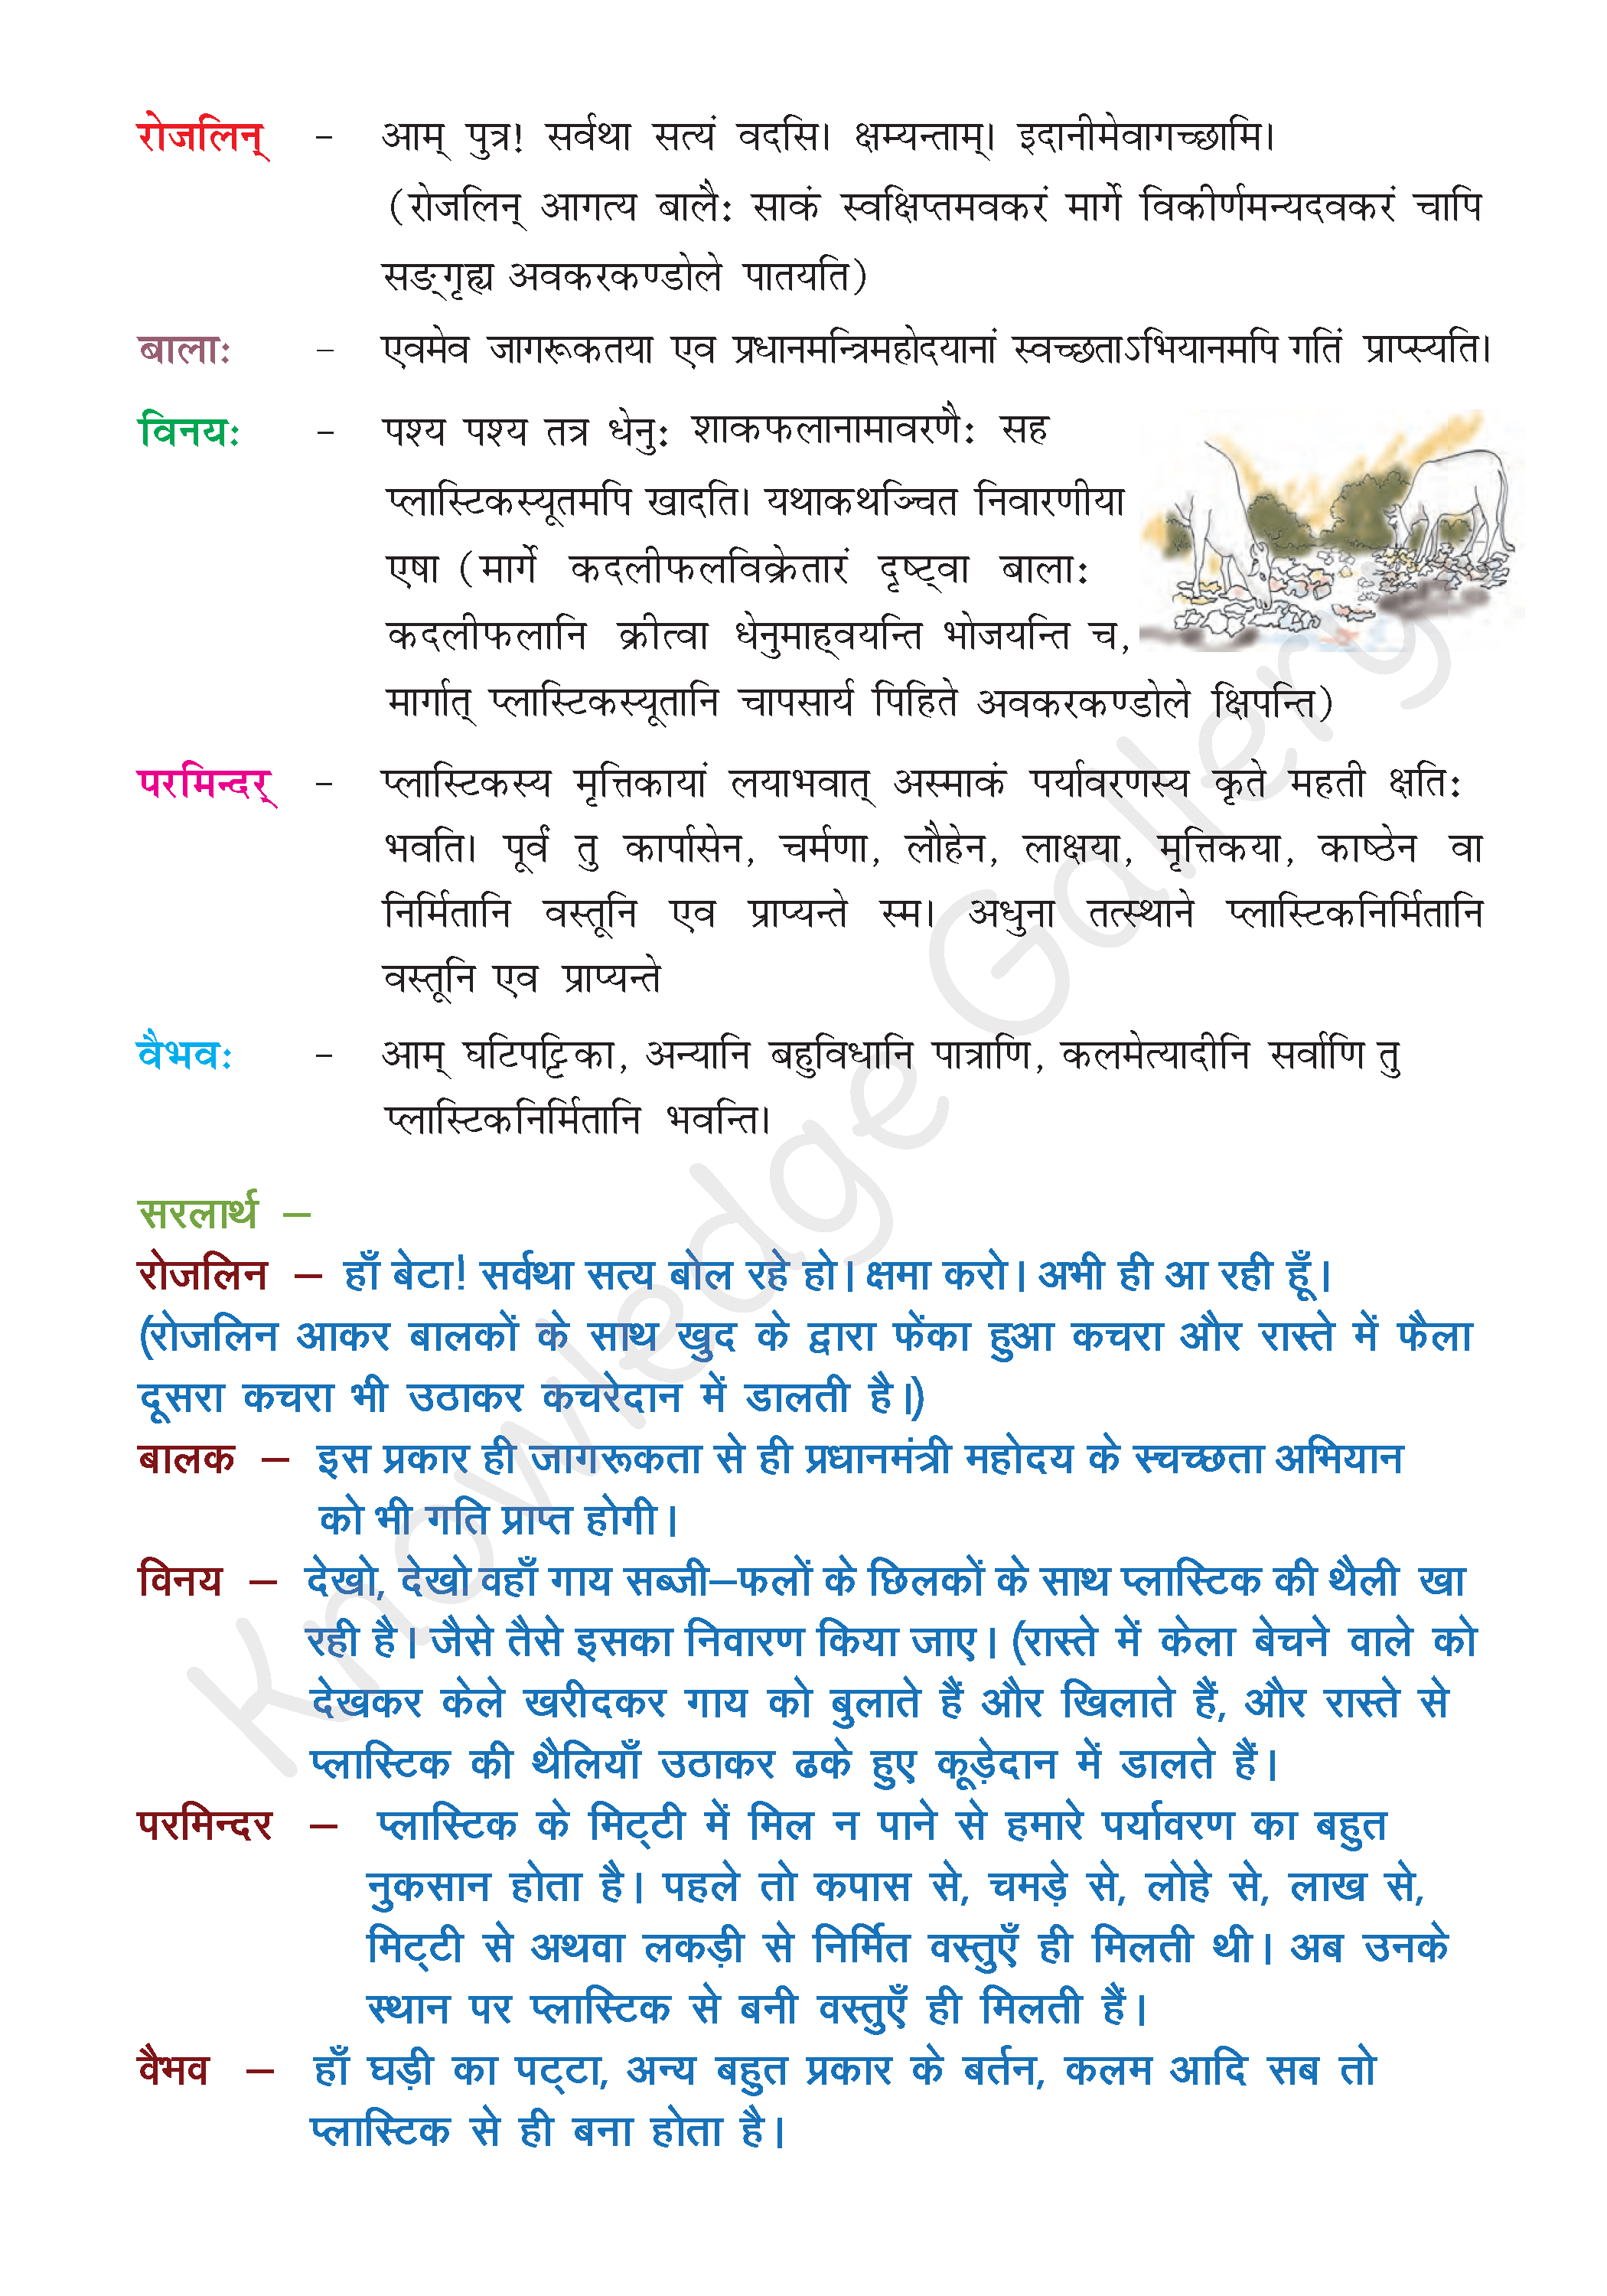 NCERT Solution For Class 8 Sanskrit Chapter 12 part 4